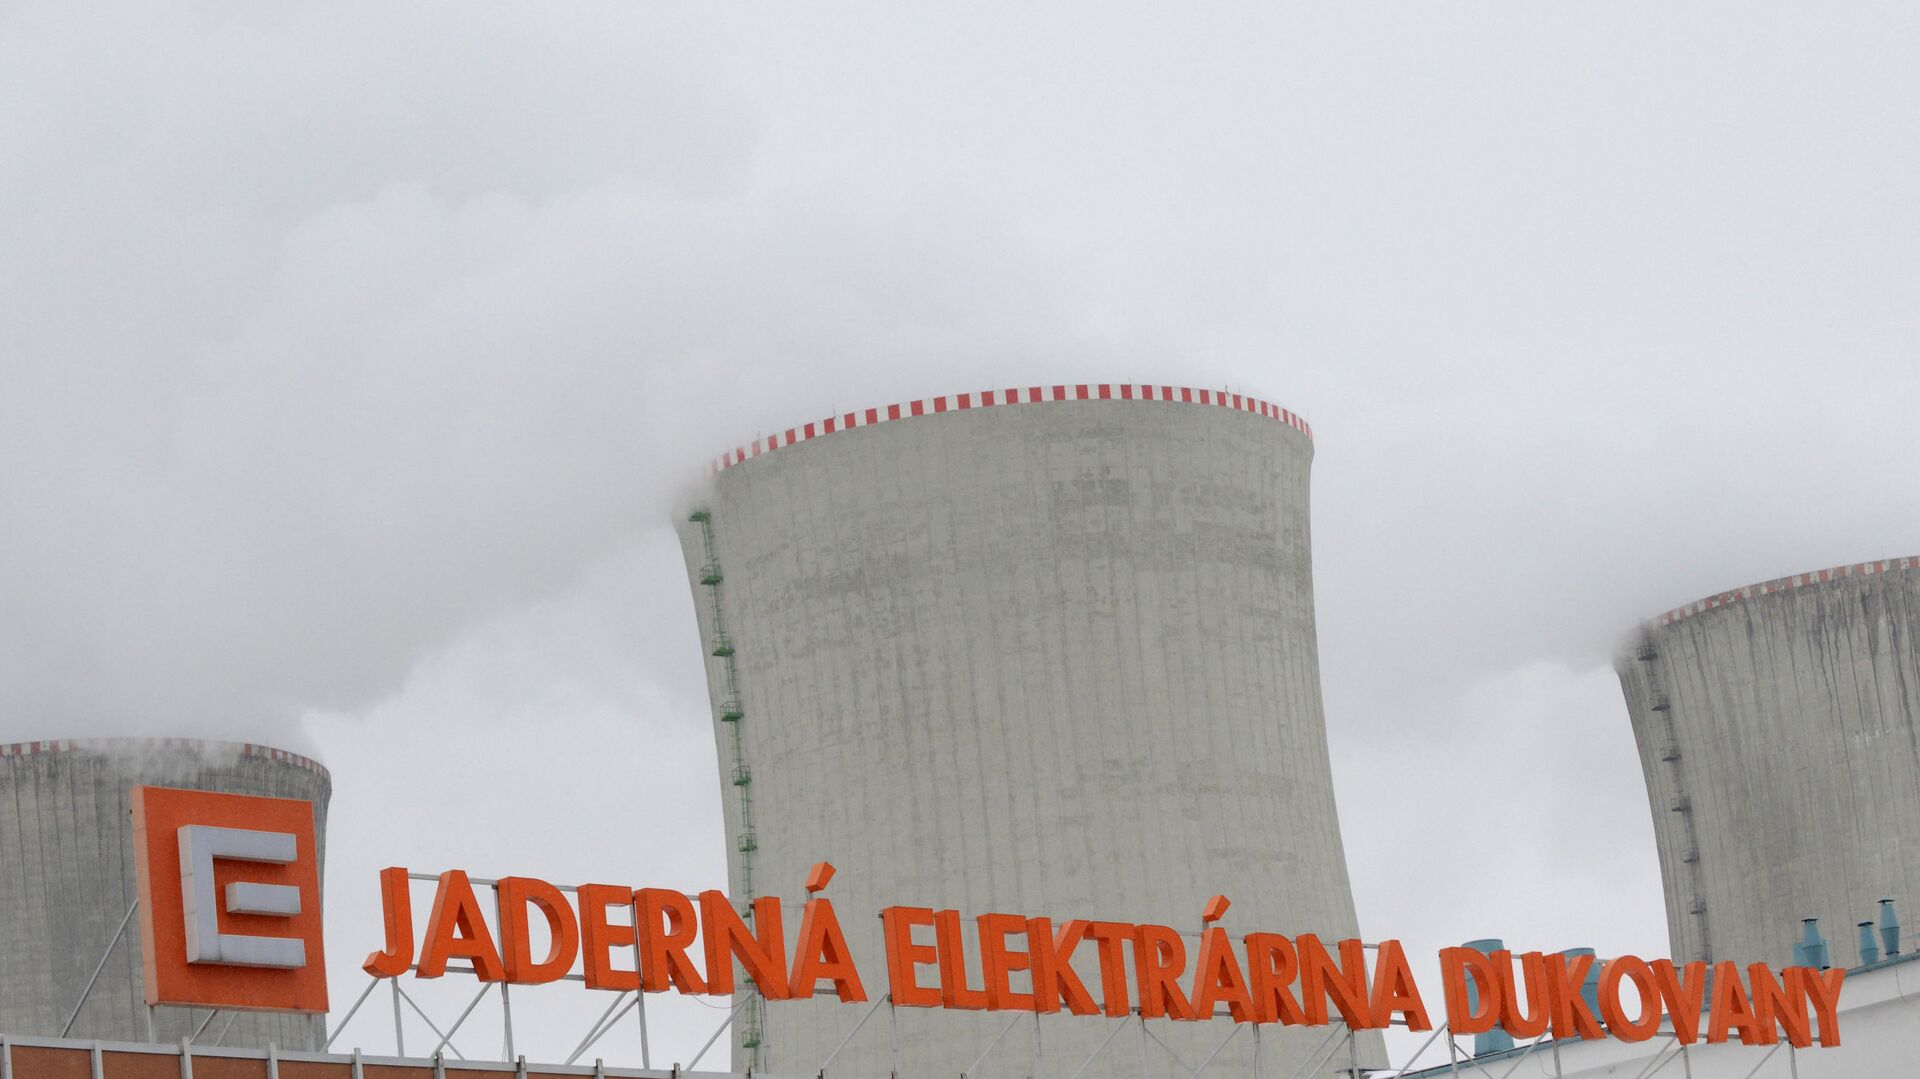 Градирни АЭС Дукованы во время учений по ядерной аварии 26 марта 2013 года в 50 км от города Брно. AFP PHOTO / МИХАЛ ЧИЗЕК - Sputnik Абхазия, 1920, 04.04.2021